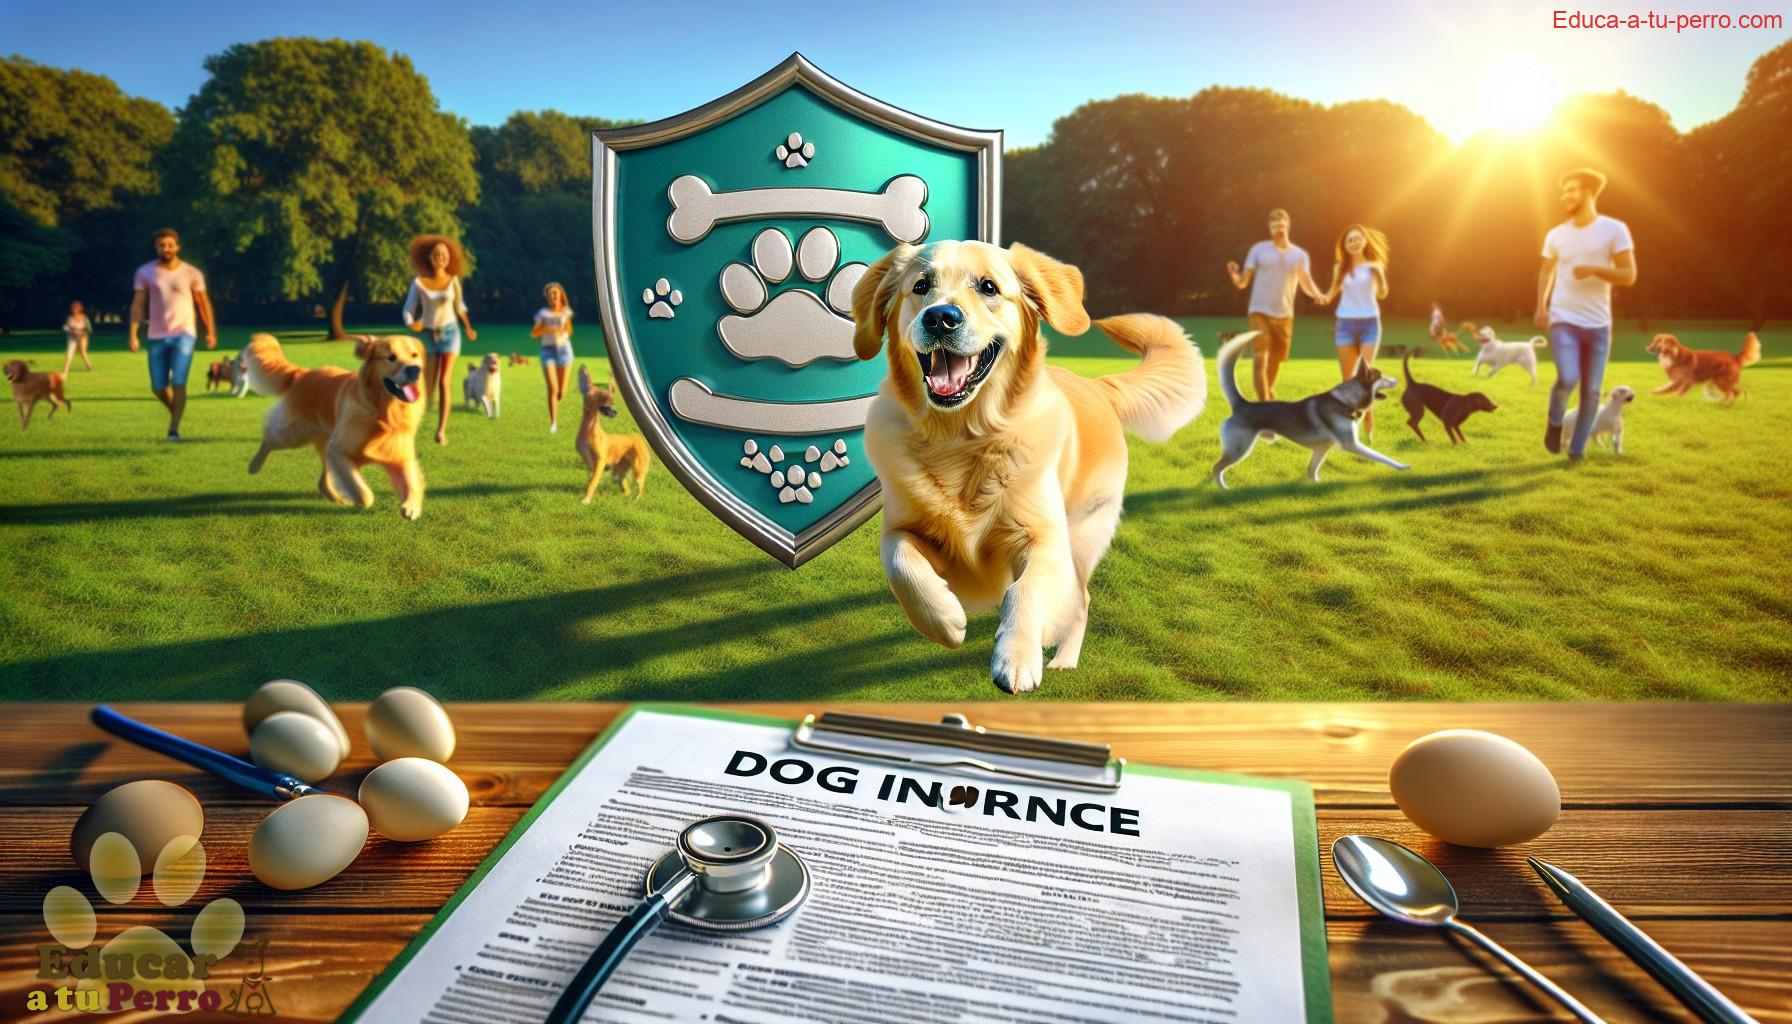 seguros para perros - Seguros para perros